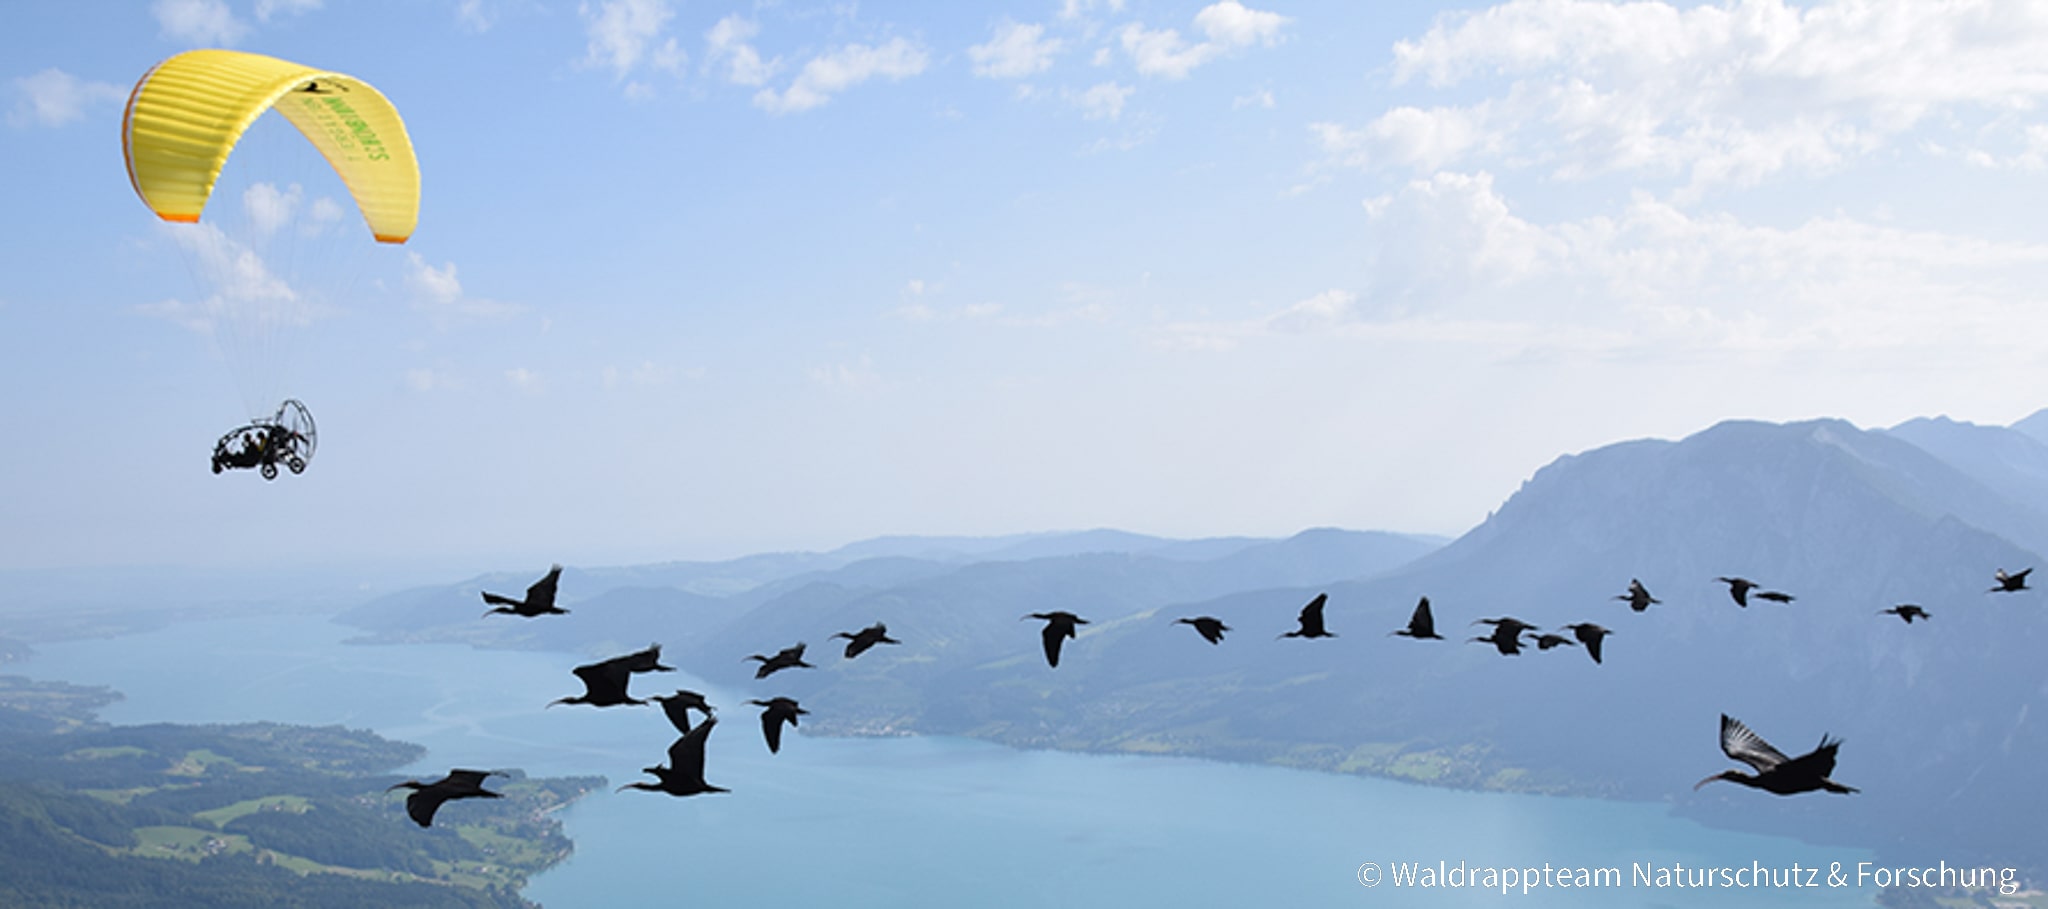 BIOPARC Valencia colabora en la espectacular migración con “vuelo-guiado” del ibis eremita, extinto en Europa en el S XVII